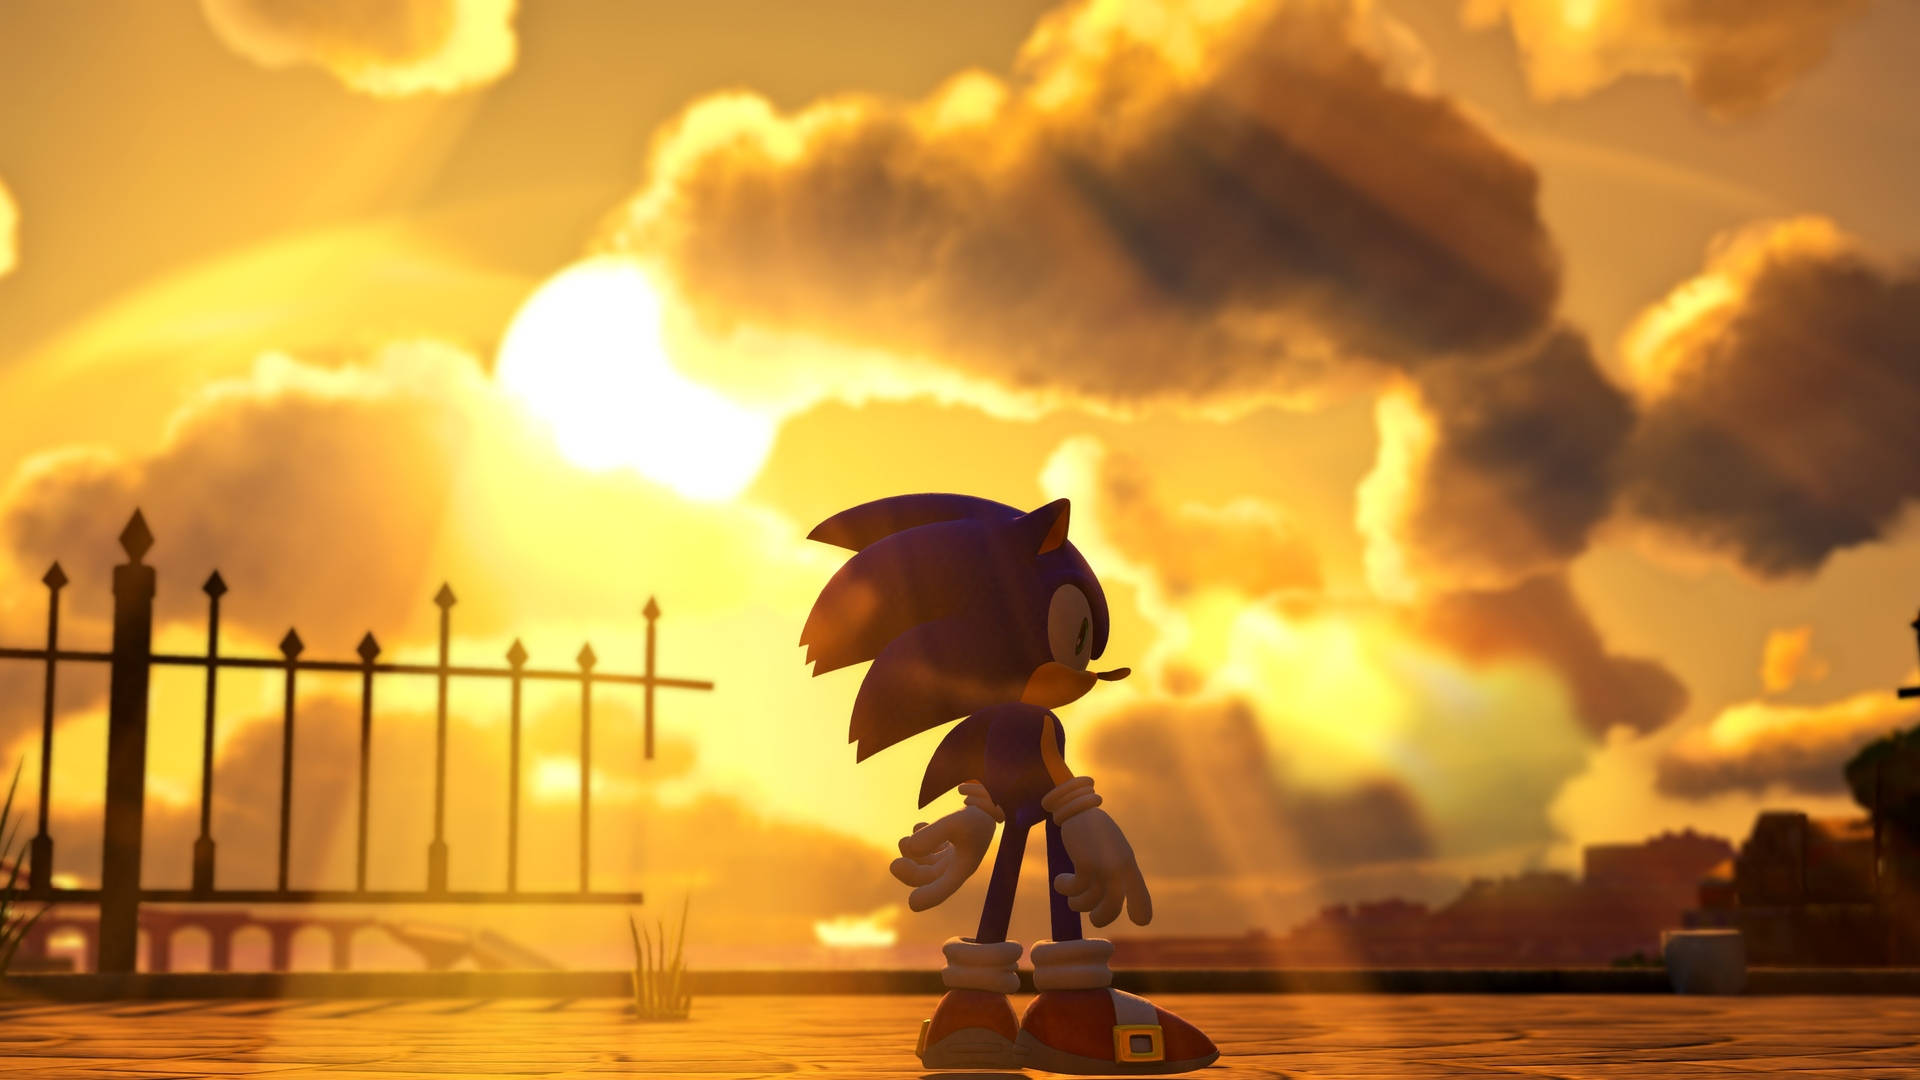 Imagens De Cool Sonic